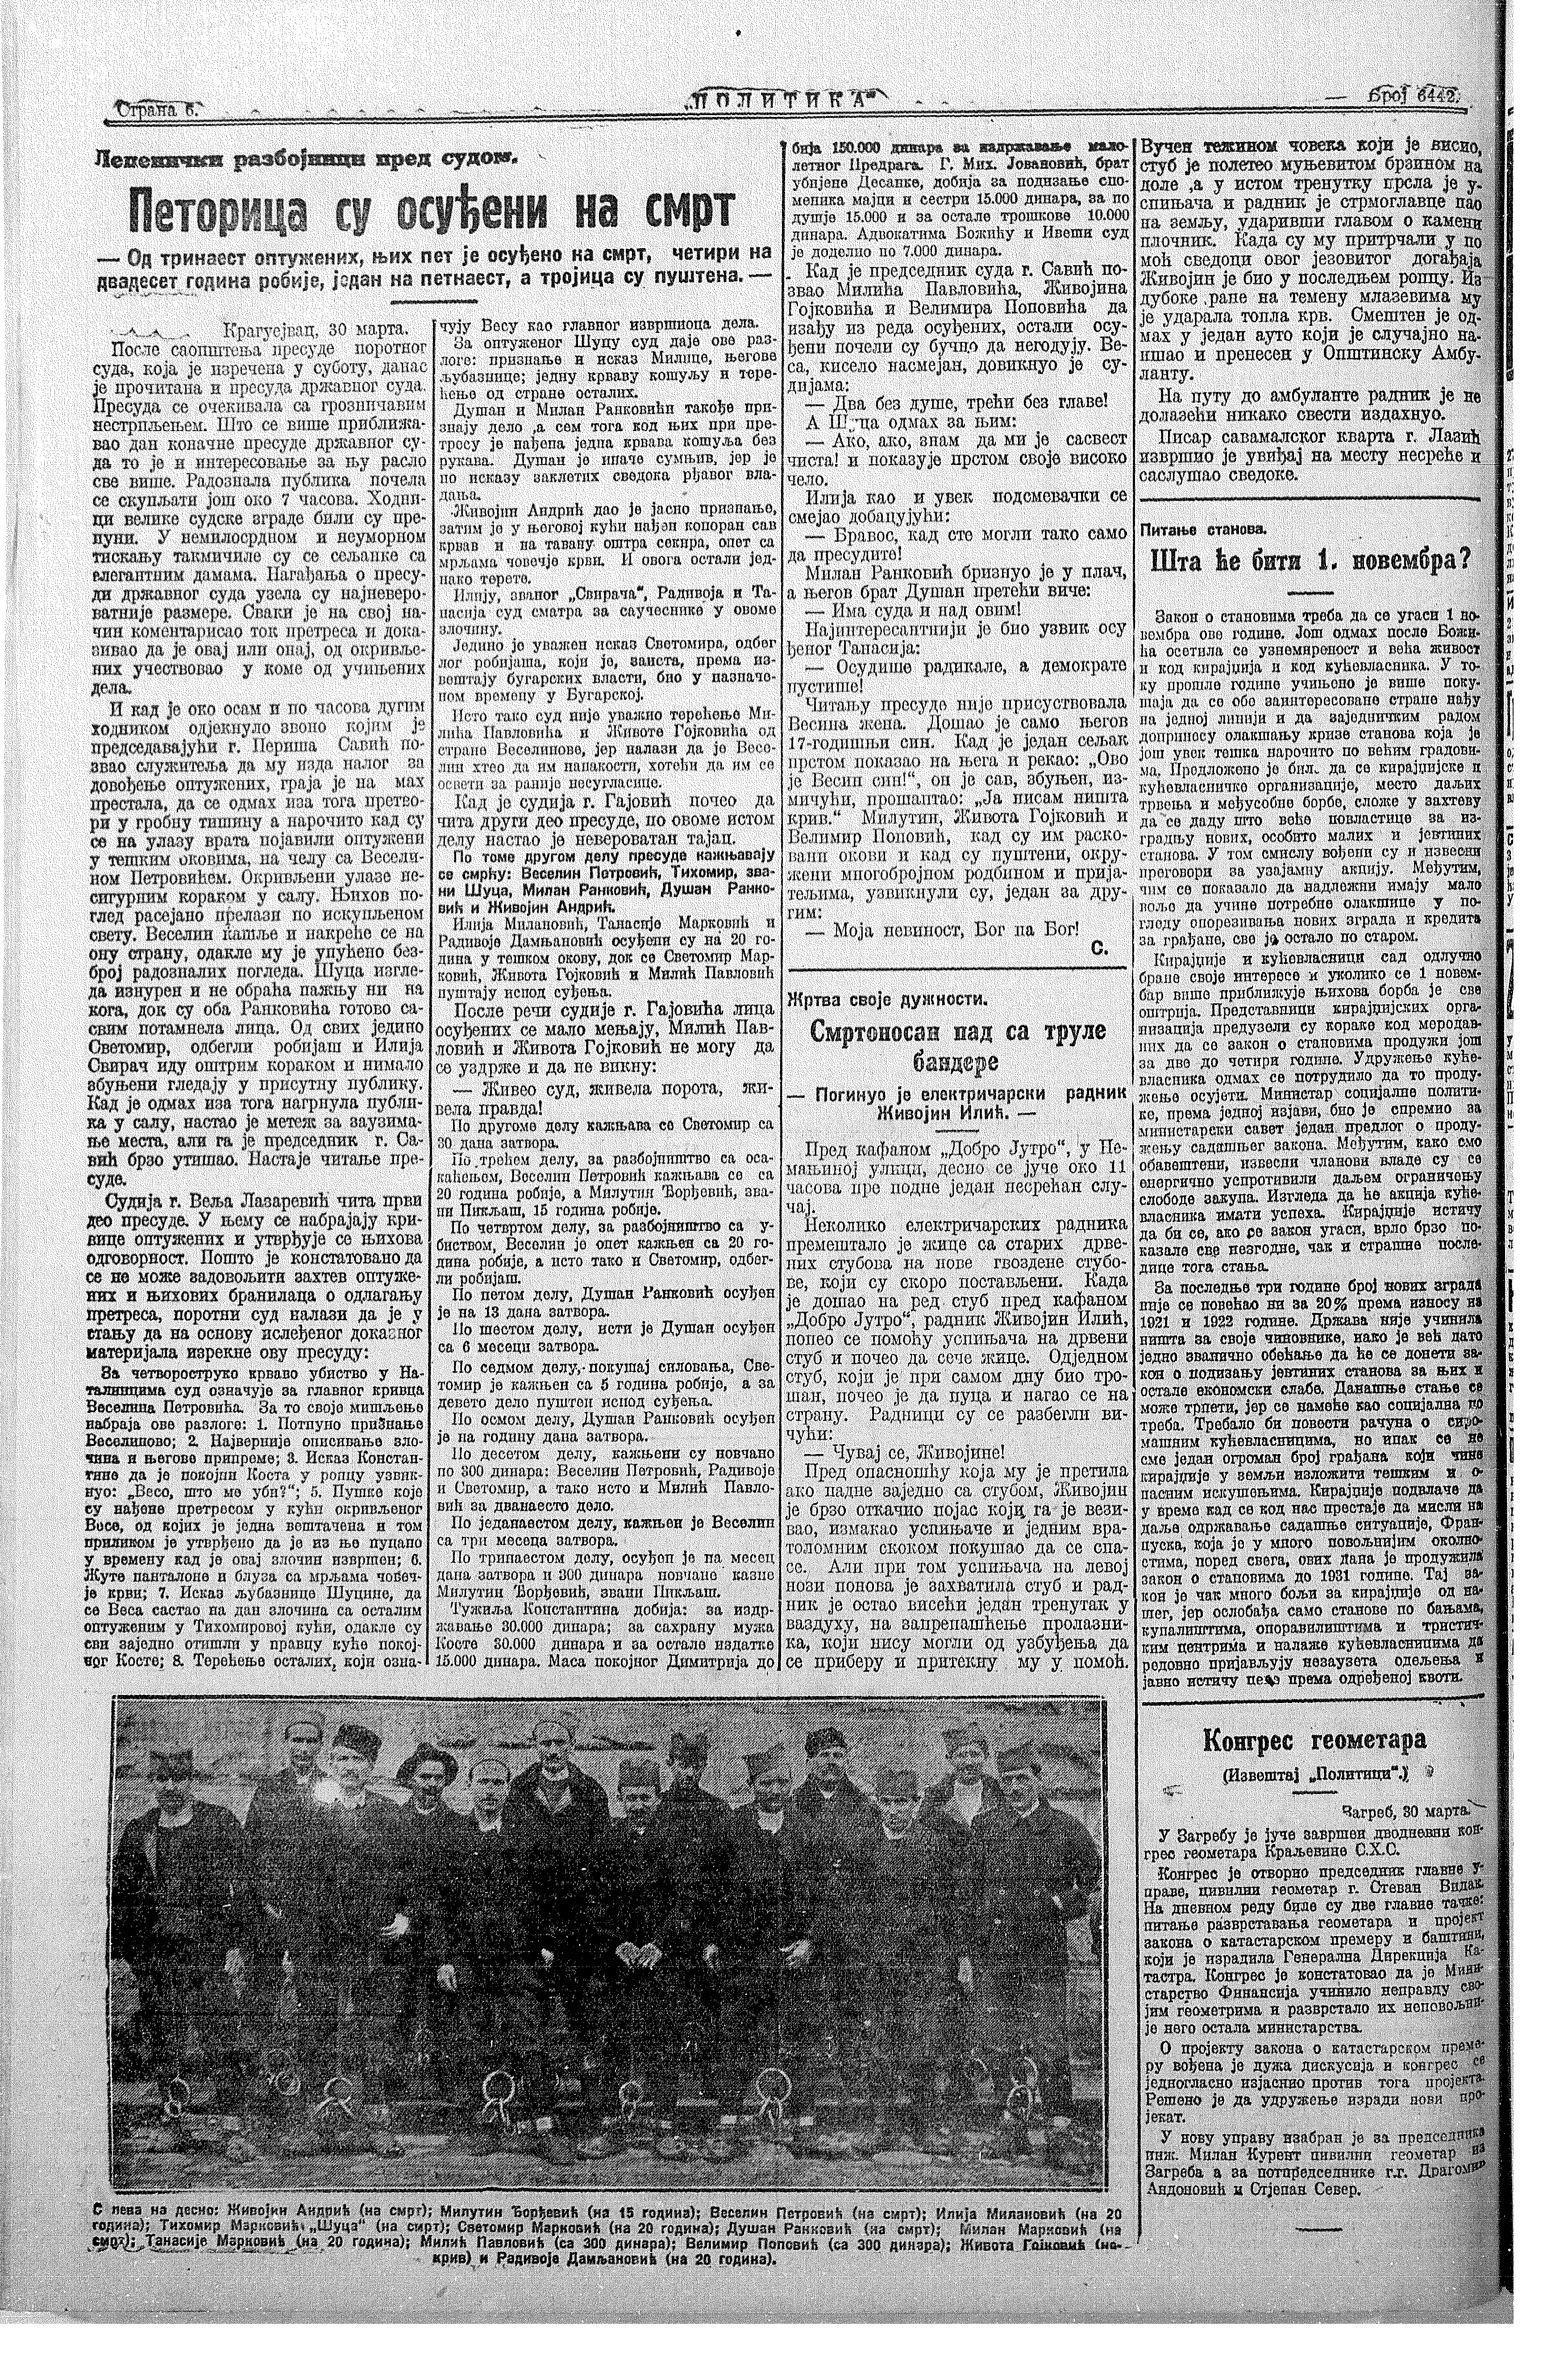 Petorica su osuđeni na smrt, Politika, 31.03.1926.